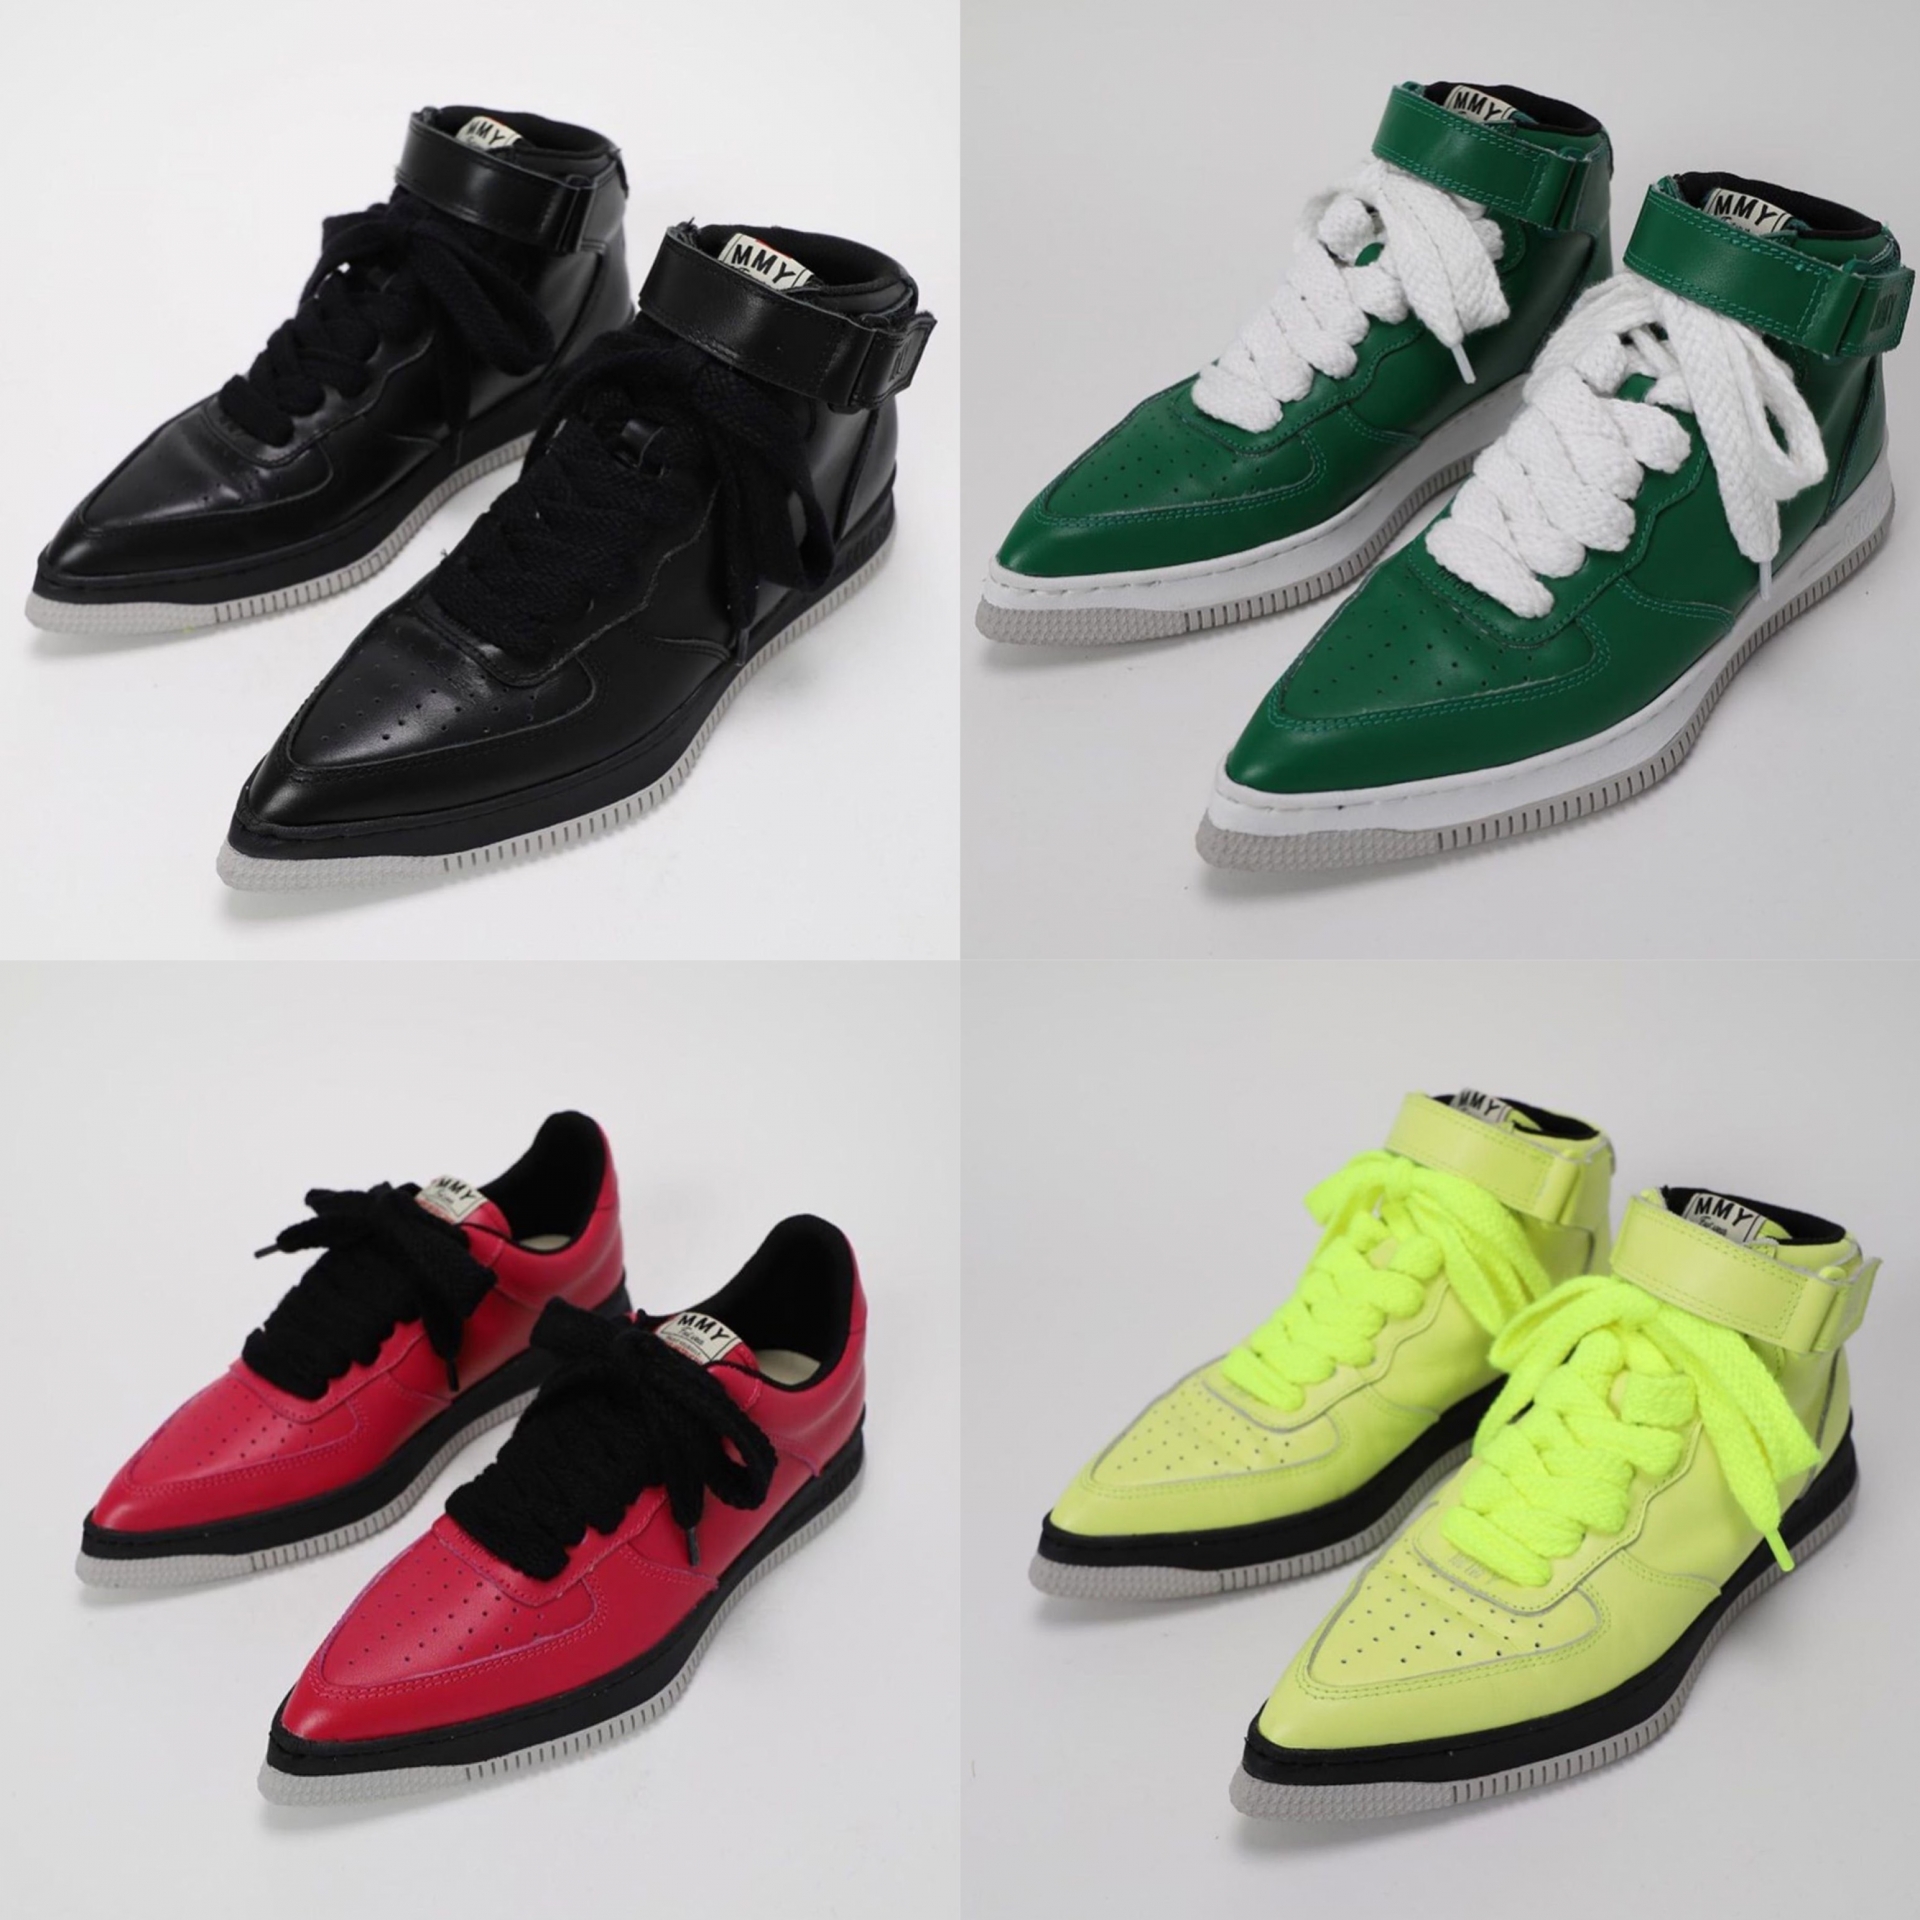 BST này gồm có 5 màu trắng, đen, đỏ, xanh lá cây và xanh neon. Mẫu giày độc đáo của NTK Mihara Yasushino đã bị nhiều người chỉ trích là phiên bản lỗi và 'ăn theo' thiết kế của dòng Nike Air Force.